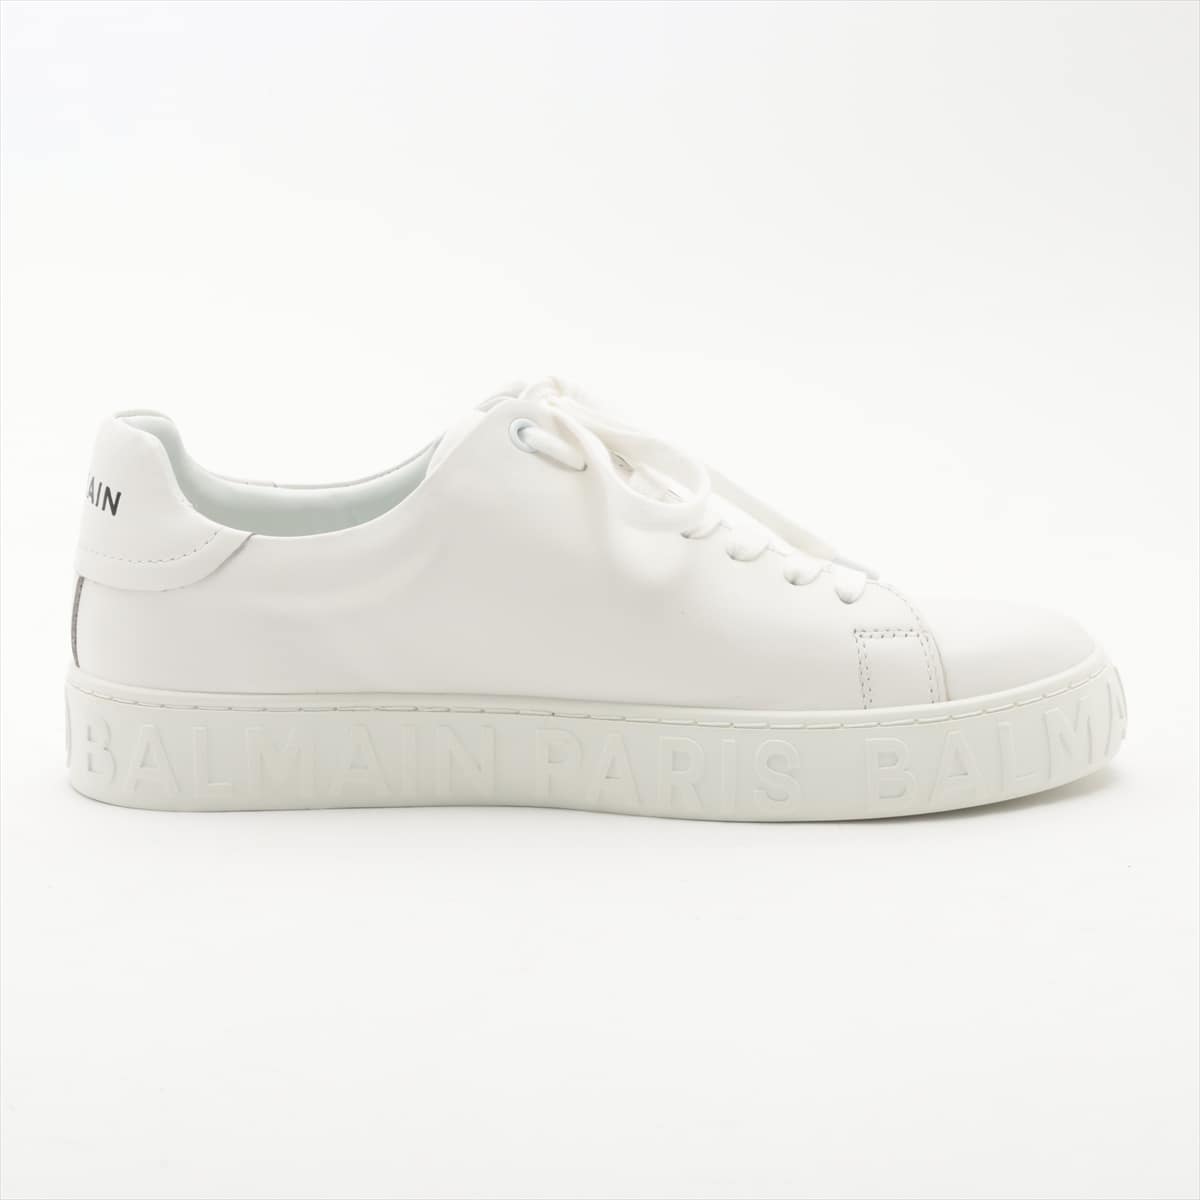 Balmain Leather Sneakers 40 Unisex White